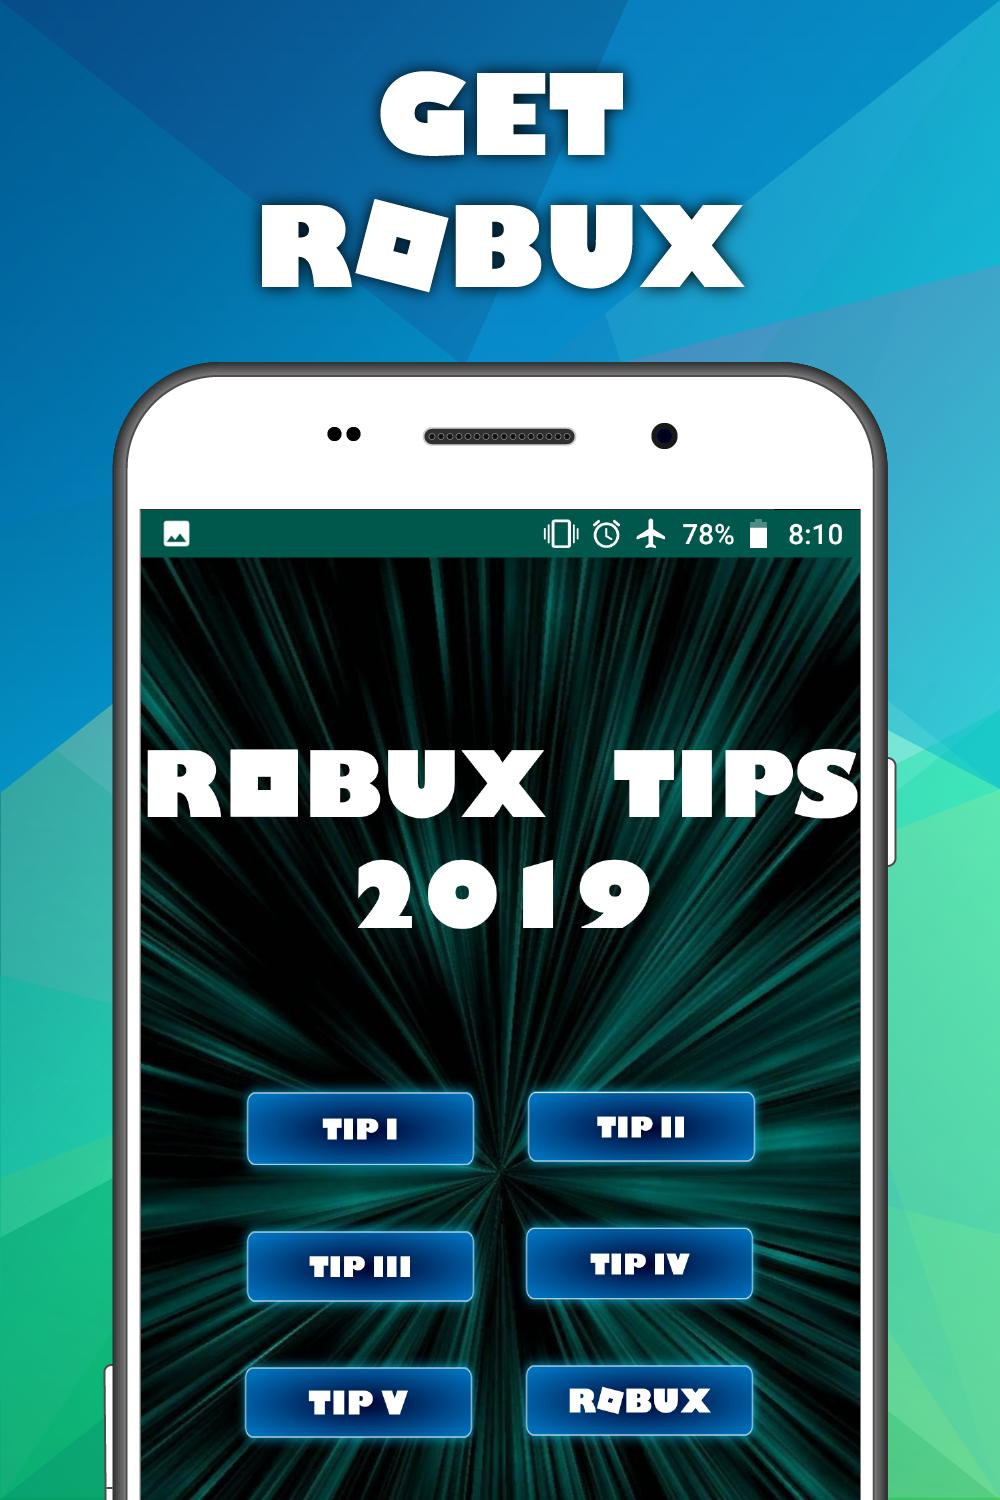 Guia Robux Para Roblox 2019 For Android Apk Download - como obtener robux gratis legalmente en el mundo roblox